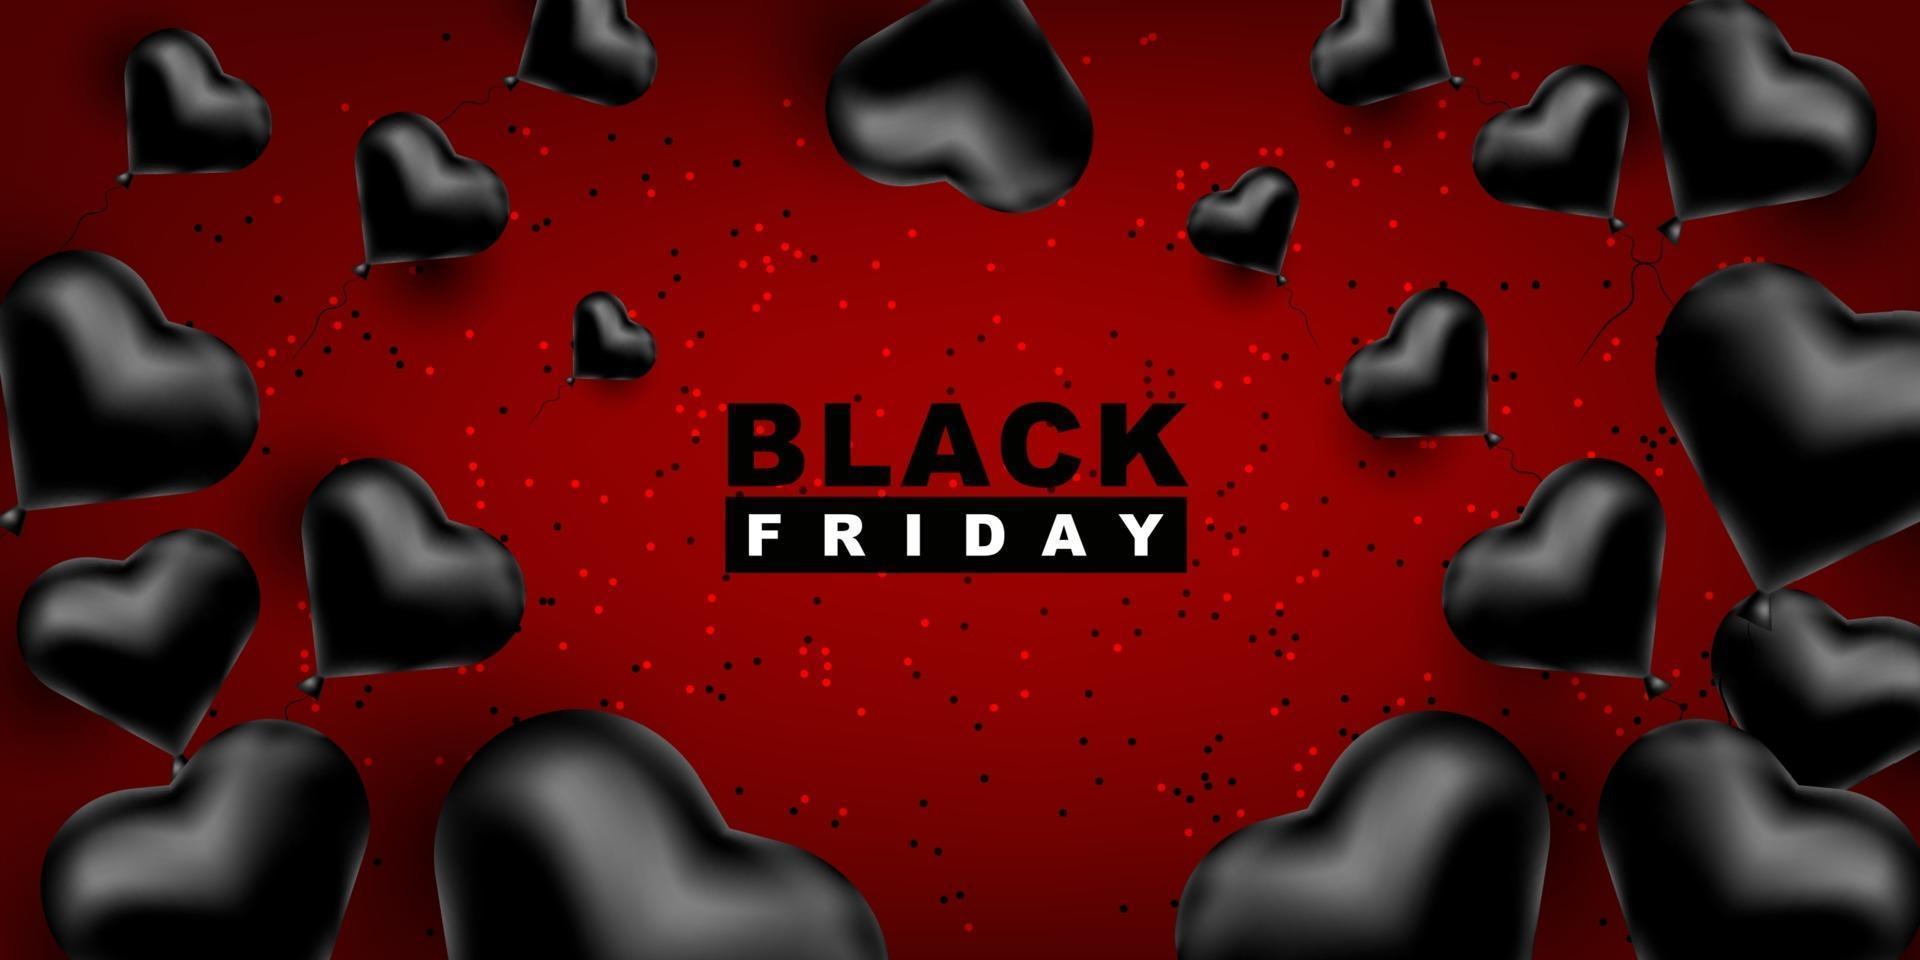 zwarte vrijdag vector achtergrond. donkere sjabloon voor een banner met zwarte ballonnen hartvorm